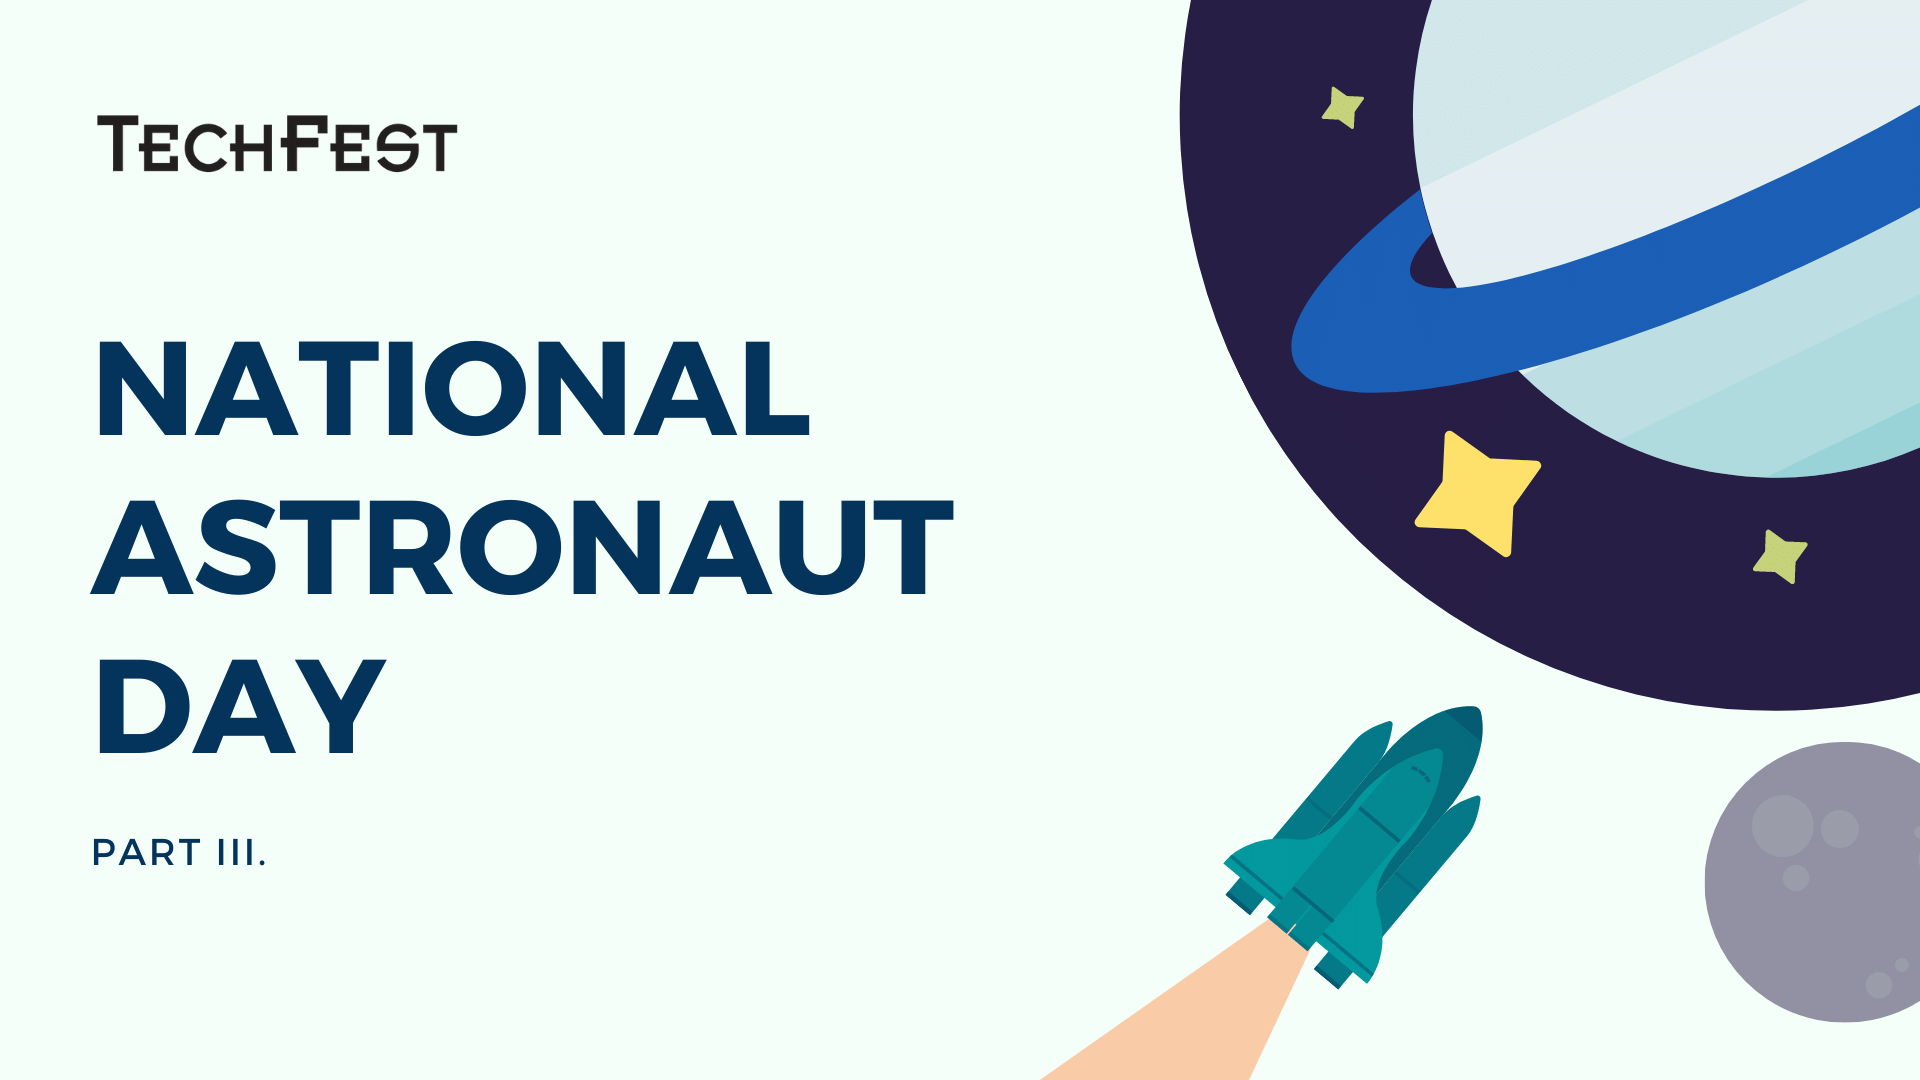 National astronauts day PIII